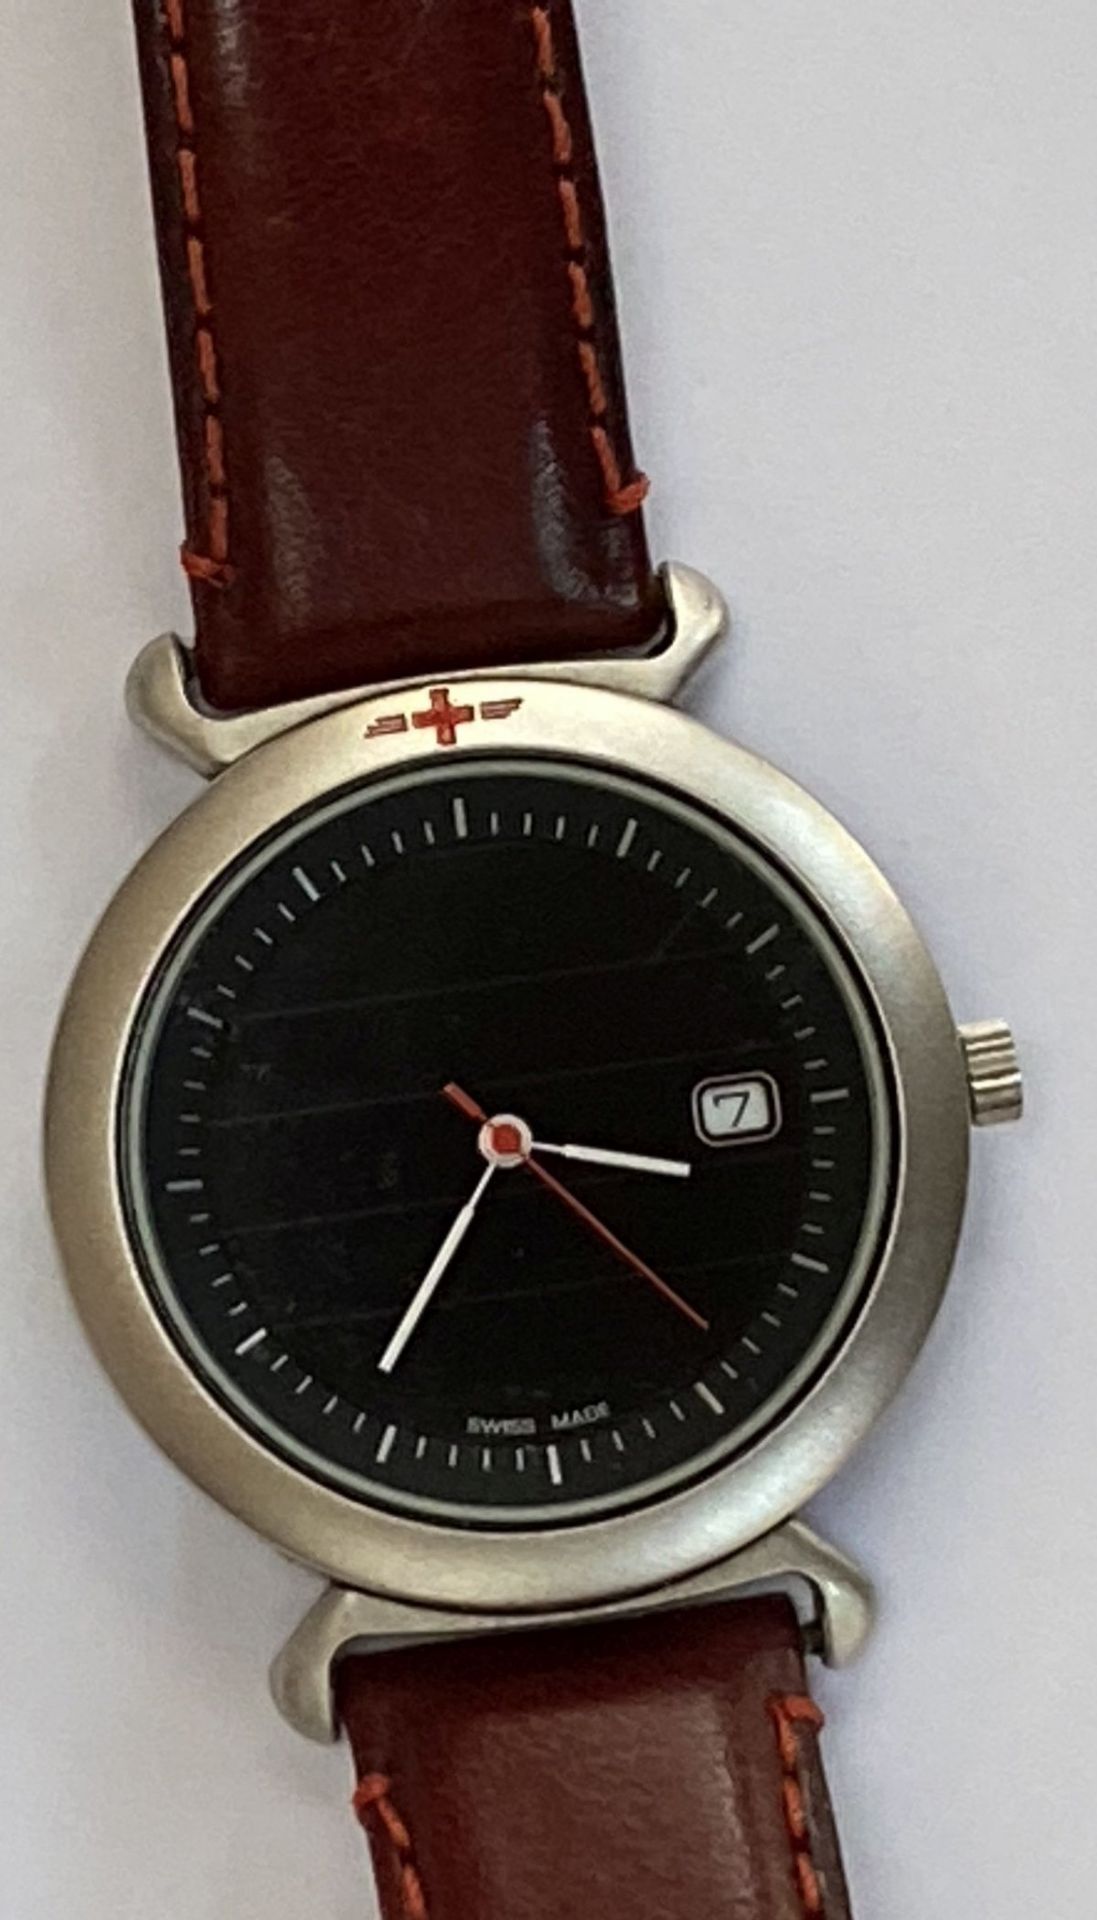 Schweizer Armbanduhr, Quarz, kein Hersteller?, nur Schweizer Kreuz, Werk läuft, gut erhalten, - Image 3 of 5